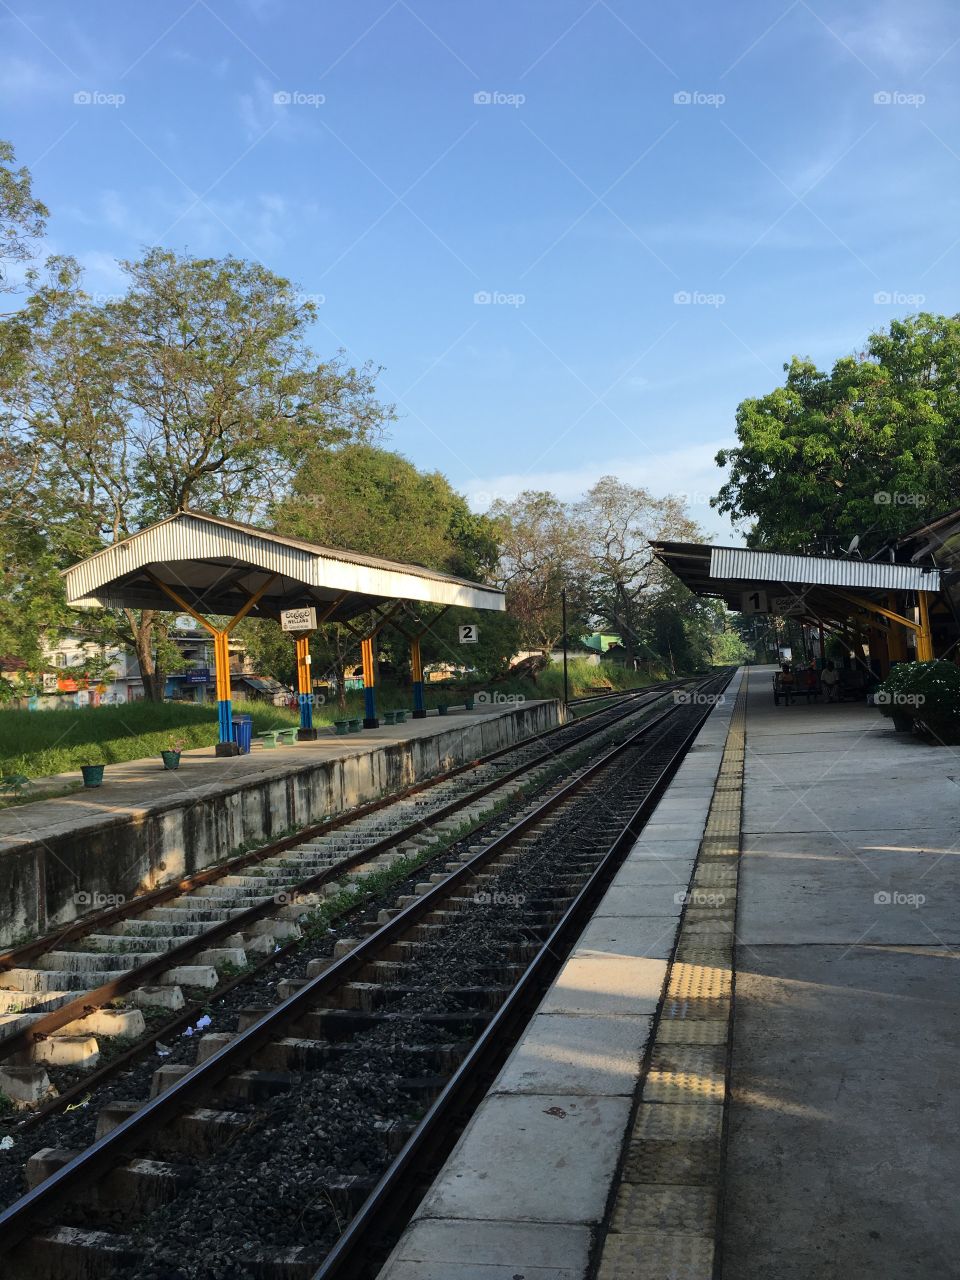 train_road_srilanka